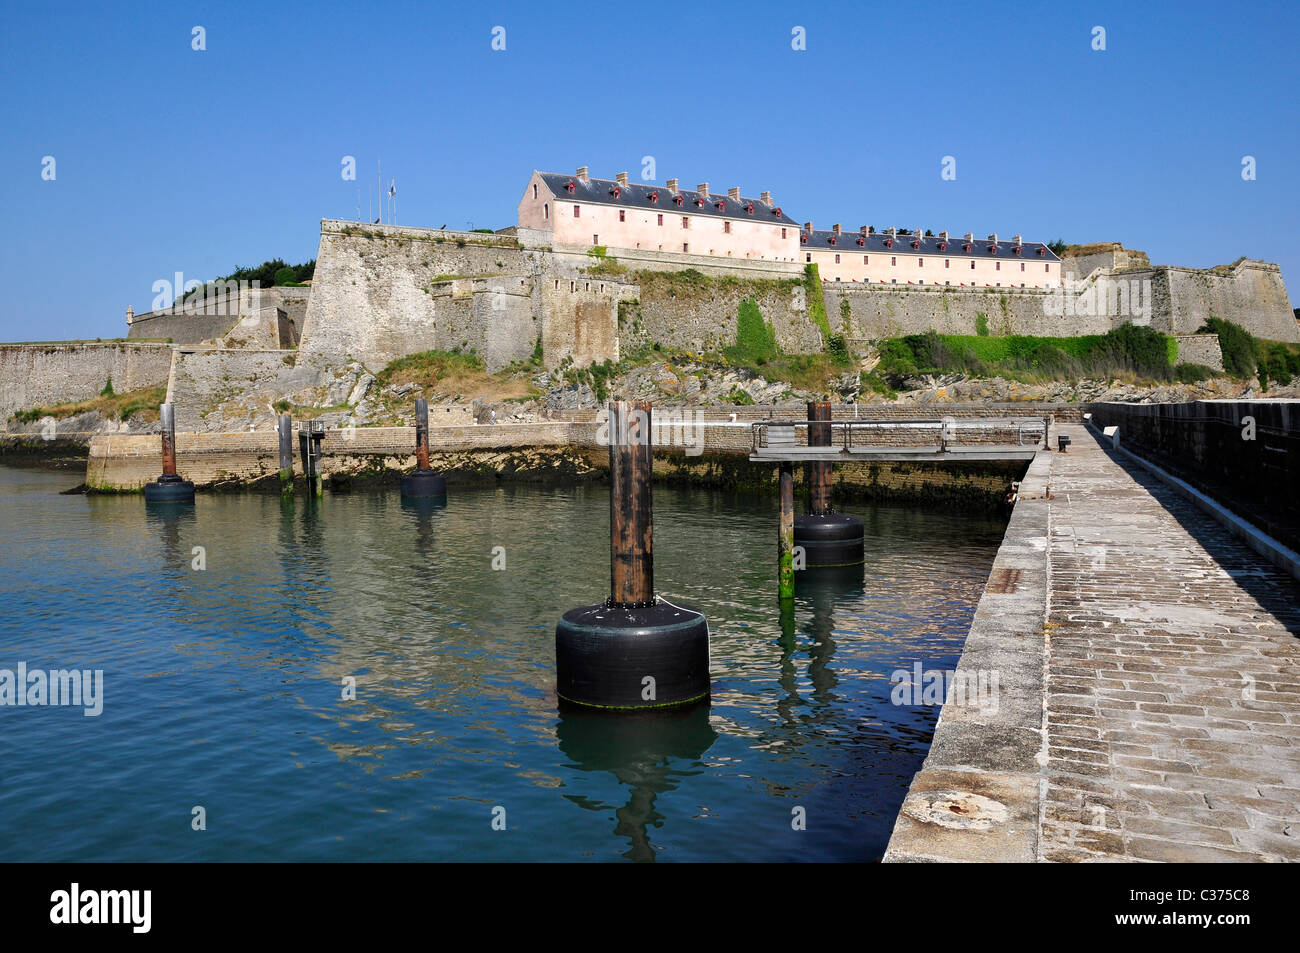 Zitadelle von Vauban auf Belle Ile, Blick auf Hafen, im Département Morbihan in der Bretagne im Nordwesten Frankreichs Stockfoto